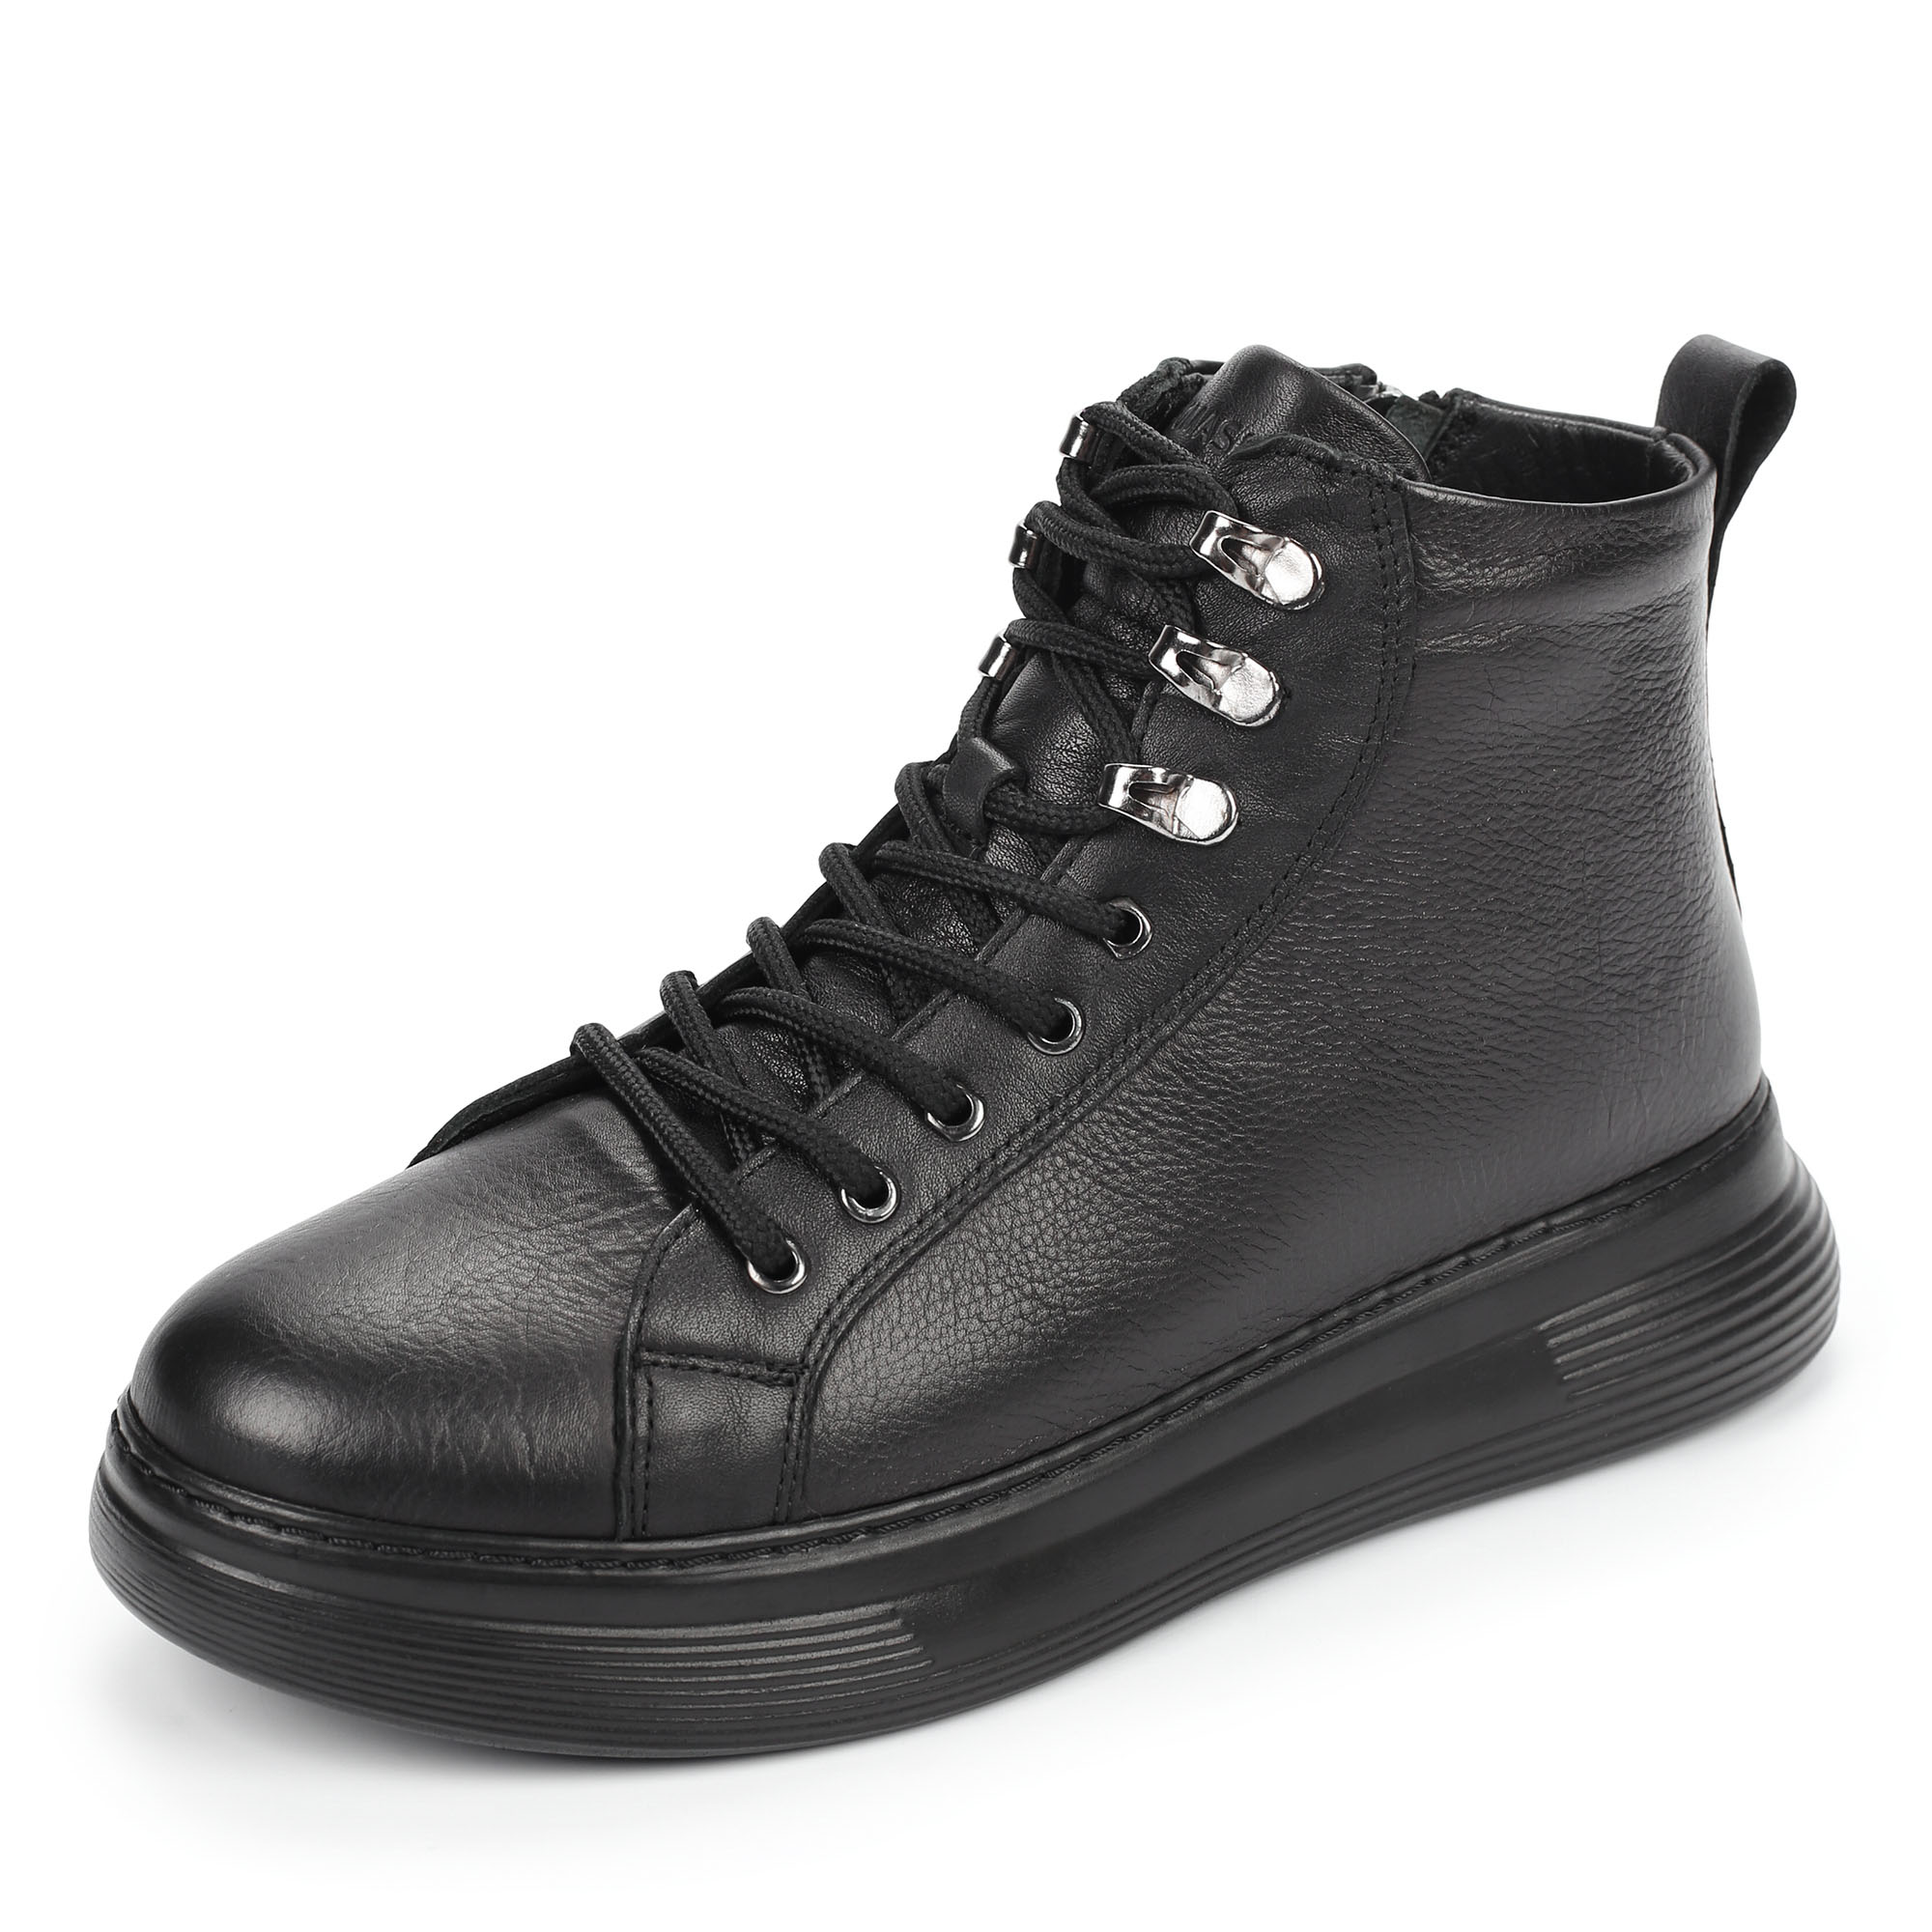 Ботинки Thomas Munz 558-036A-2102, цвет черный, размер 38 - фото 2